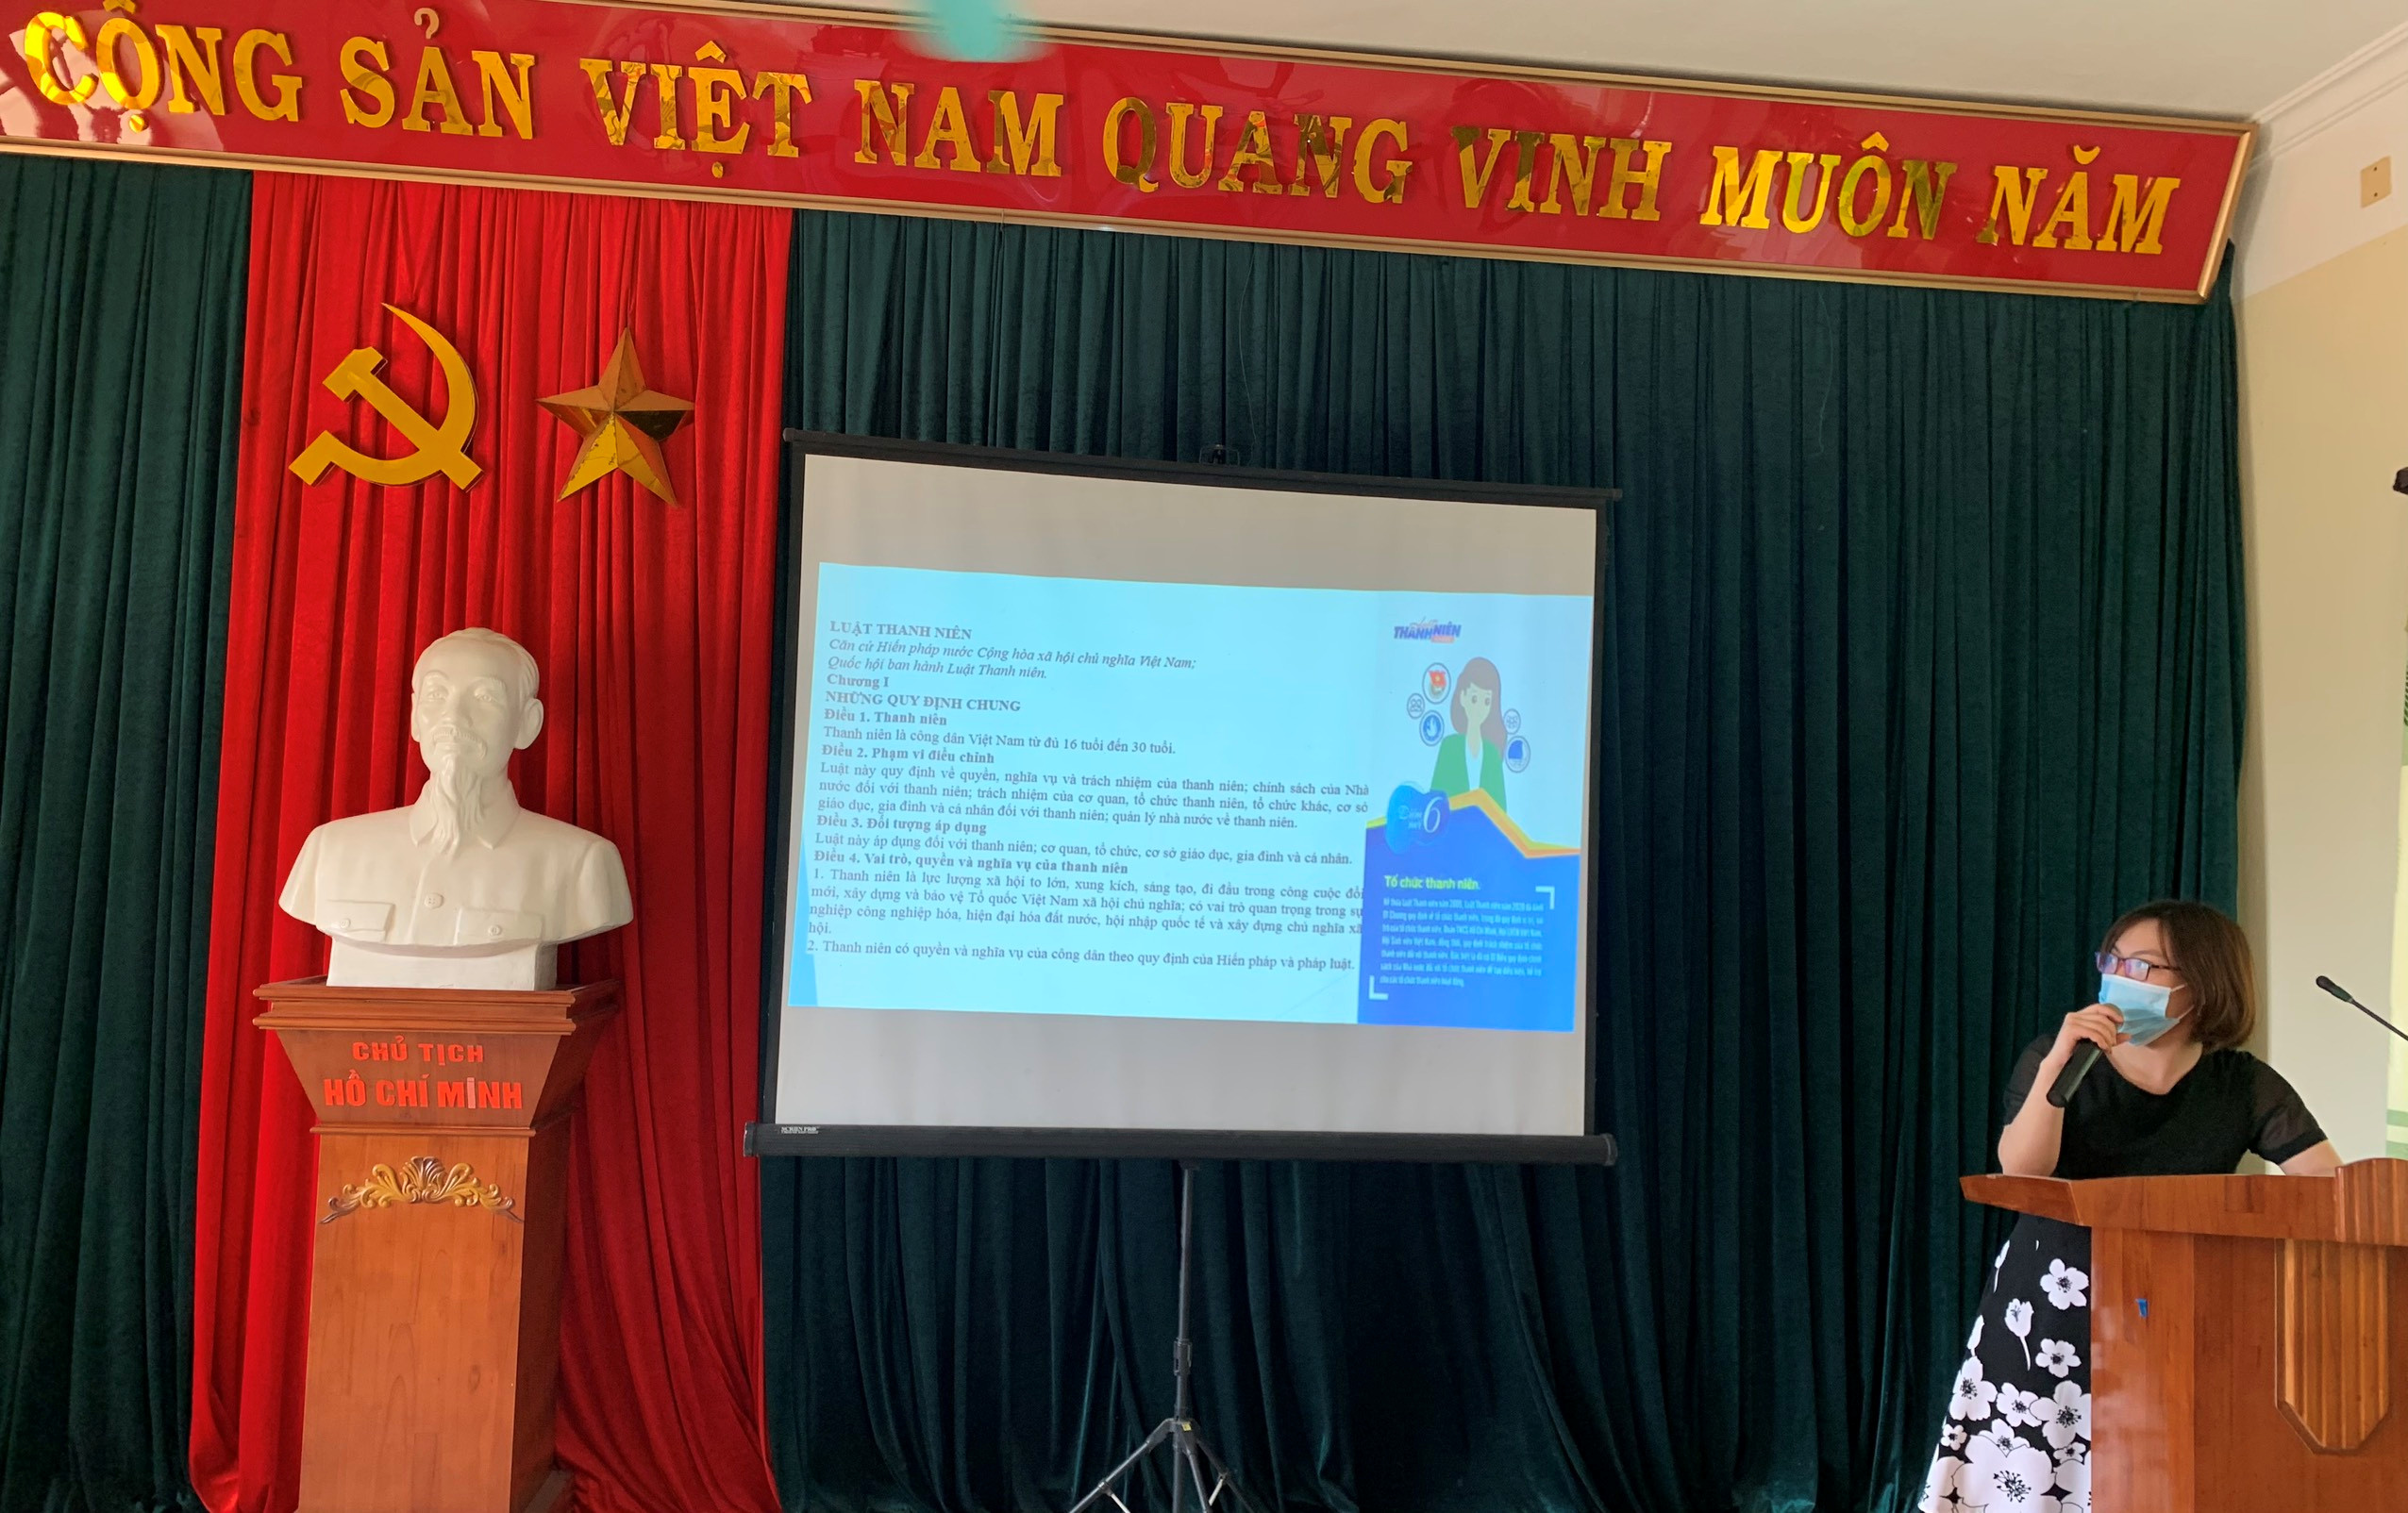 Yên Mô: Tổ chức hội nghị tuyên truyền Luật Thanh niên, Chiến lược phát triển thanh niên Việt Nam giai đoạn 2021 - 2030